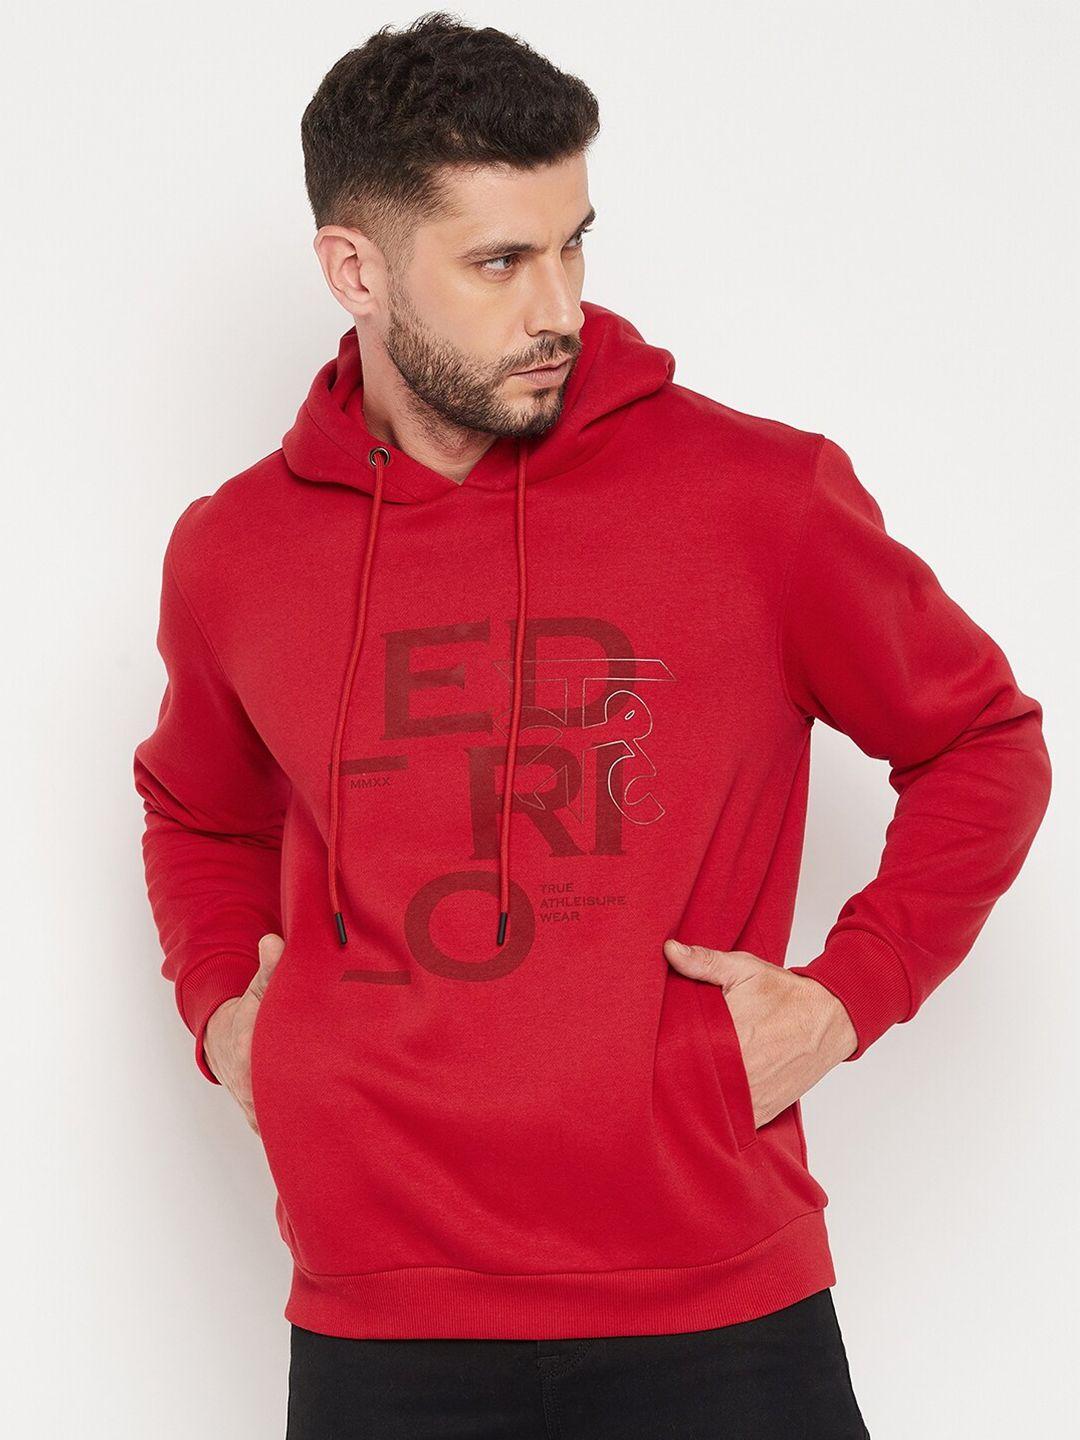 edrio-men-red-printed-hooded-sweatshirt